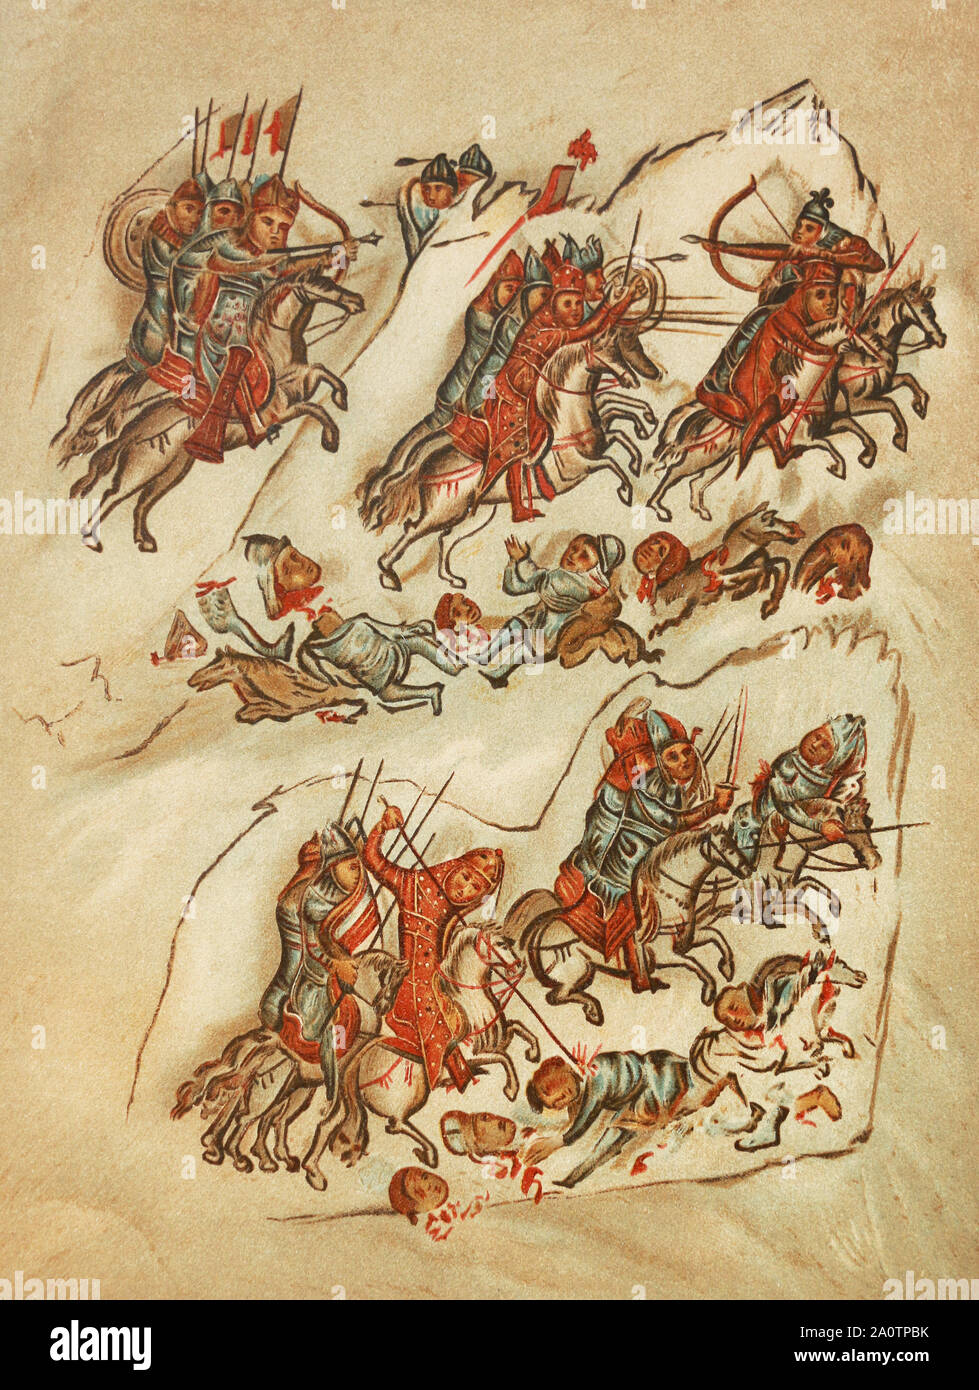 La bataille entre la Fédération et les cavaliers bulgare au 10ème siècle. Miniature médiévale. Banque D'Images